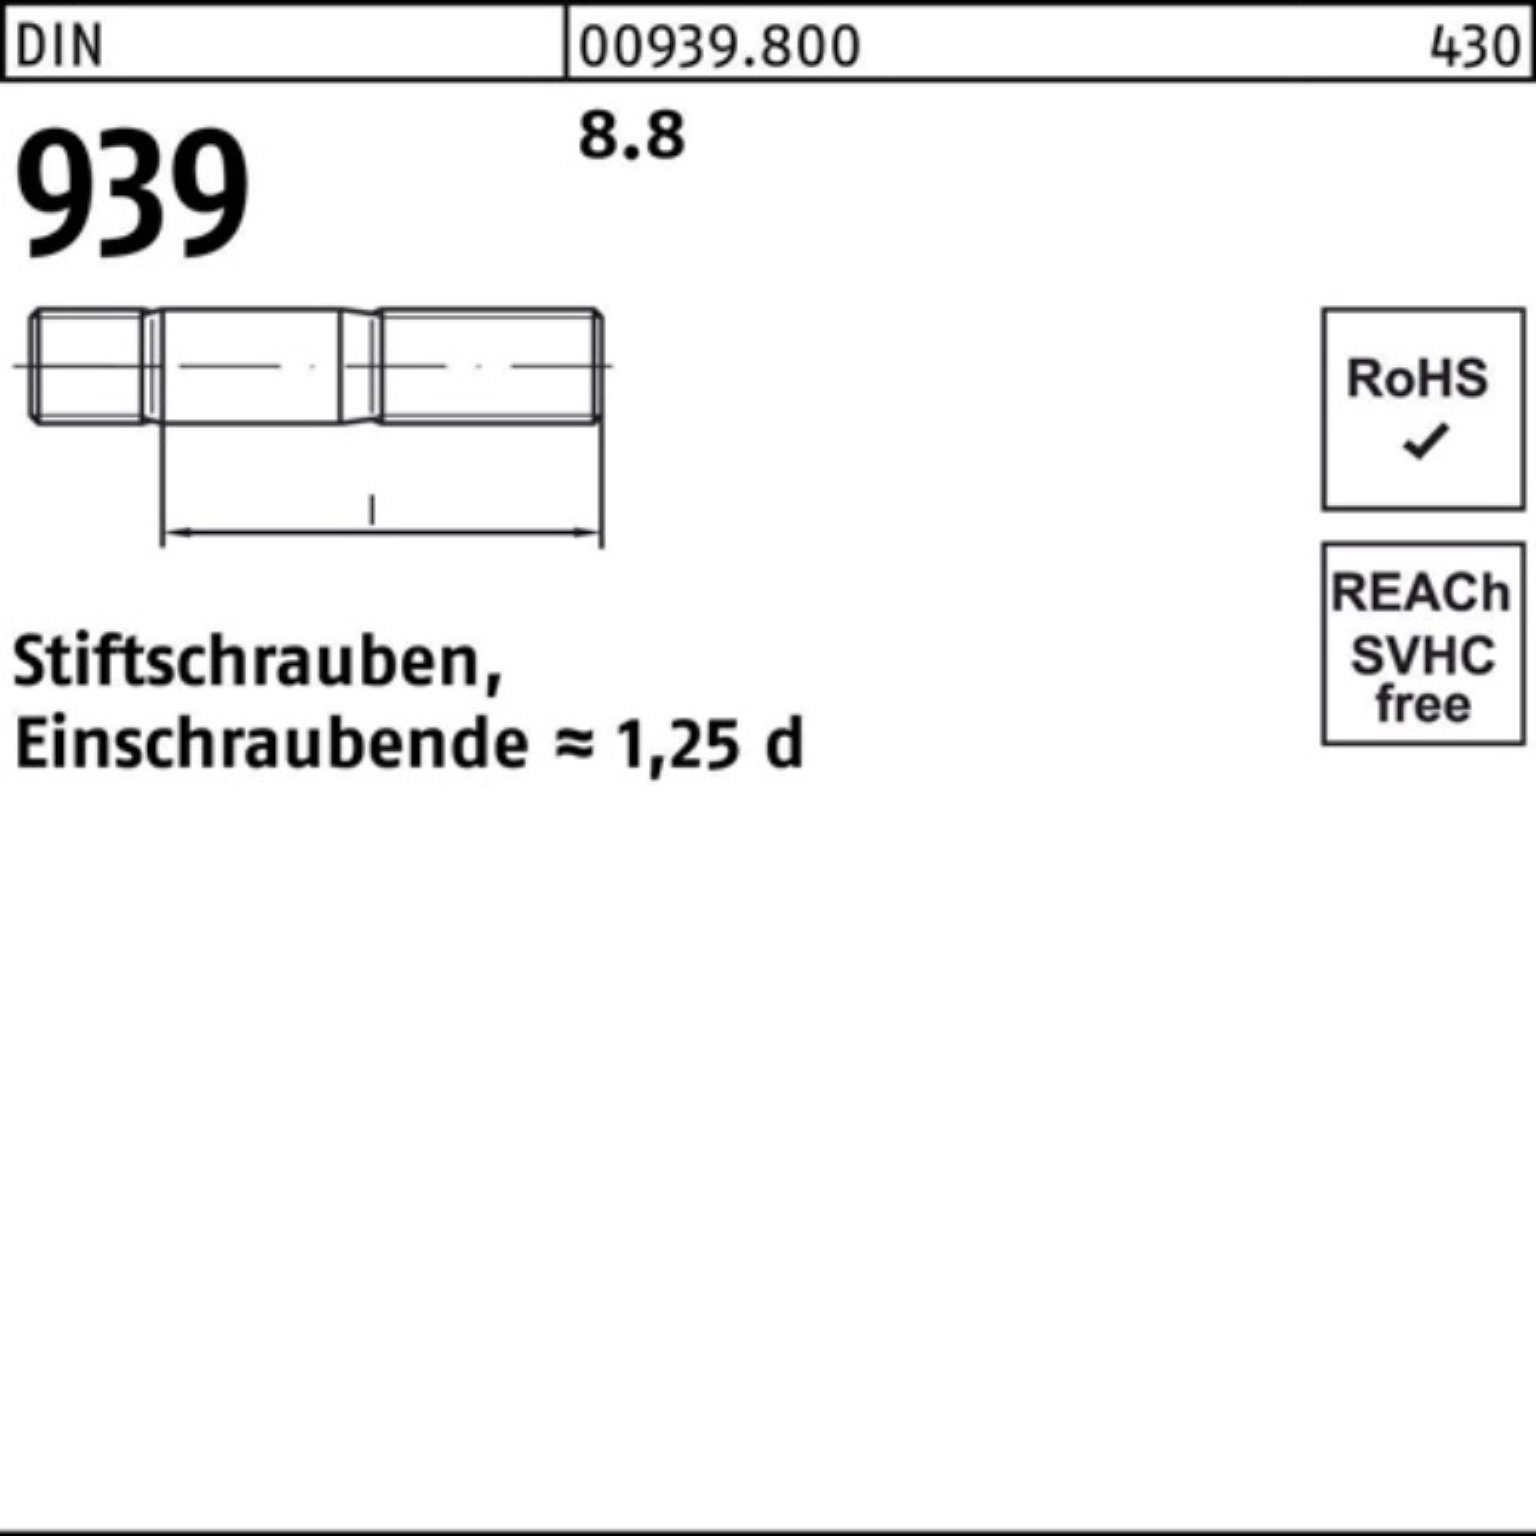 DIN 939 Pack S Stiftschraube 50 100er Stiftschraube Einschraubende=1,25d 8.8 45 Reyher M10x